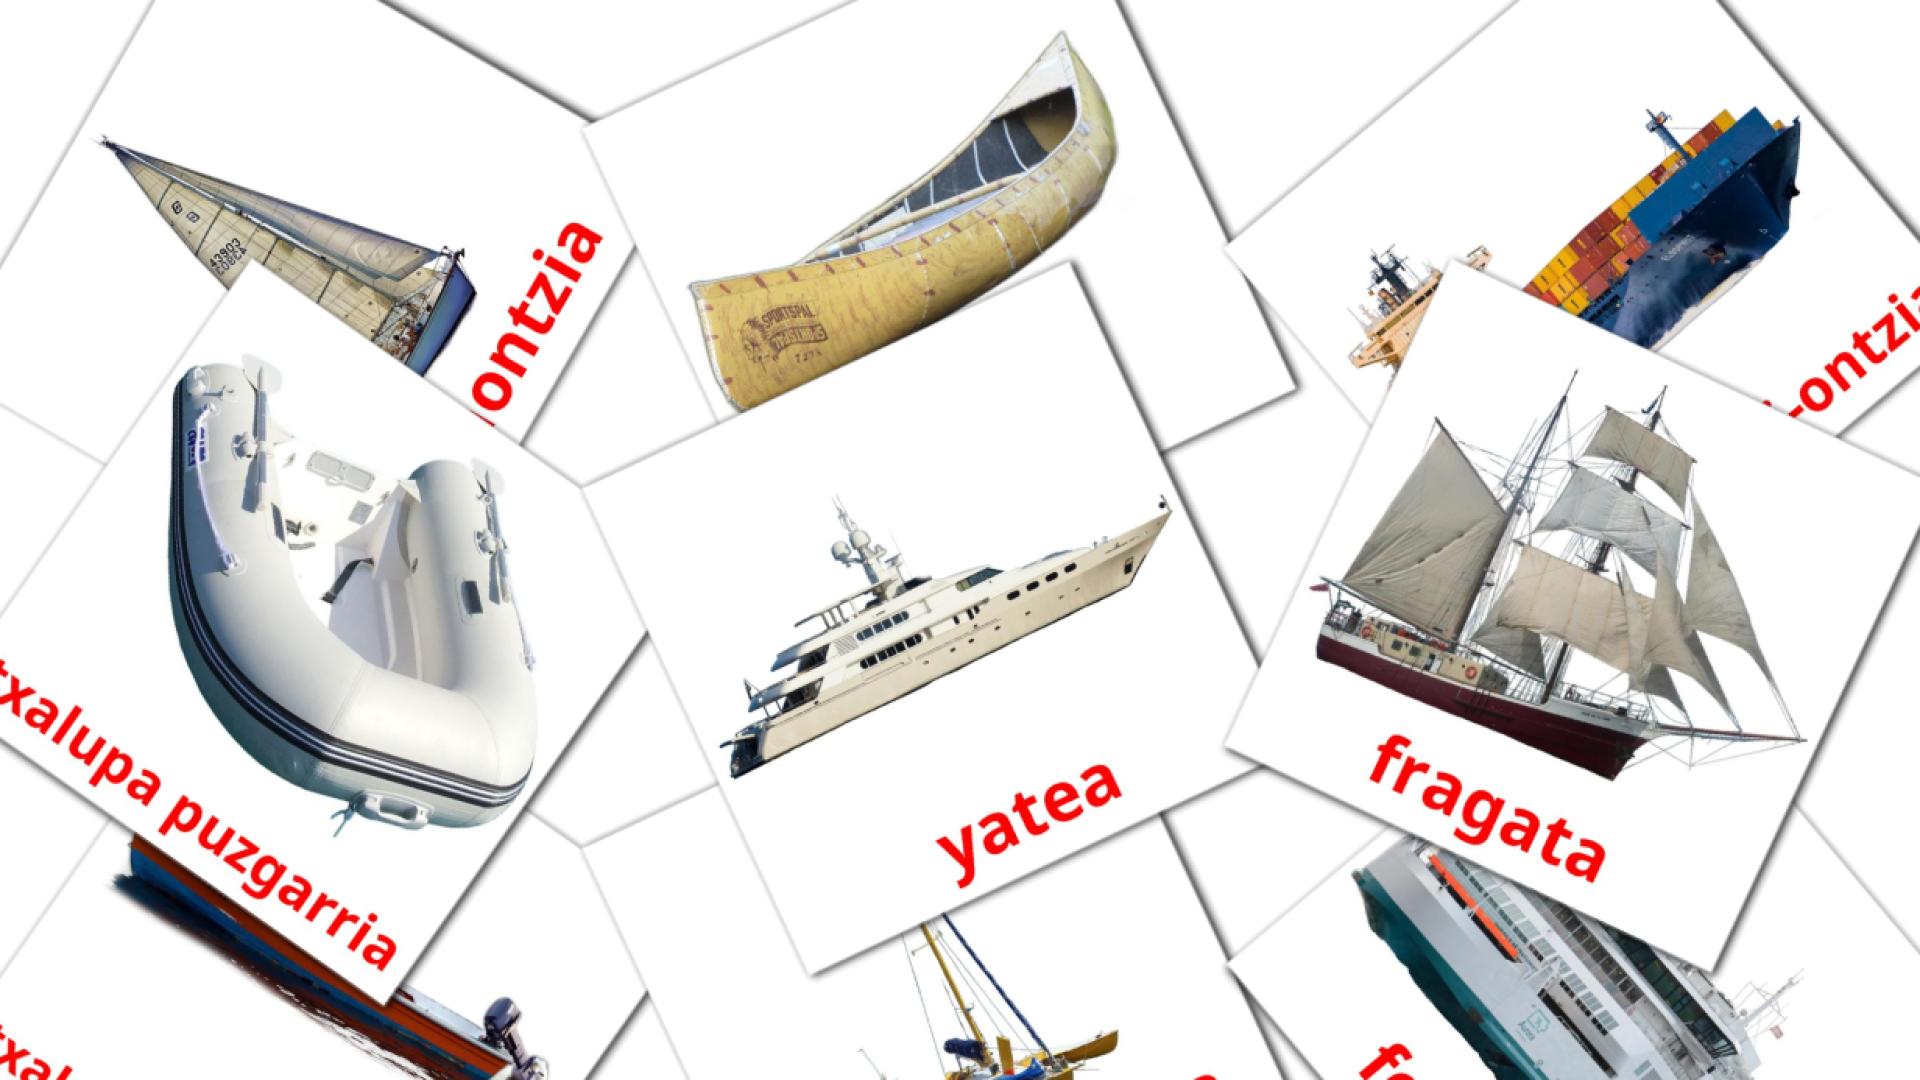 Watertransport - baskische woordenschatkaarten